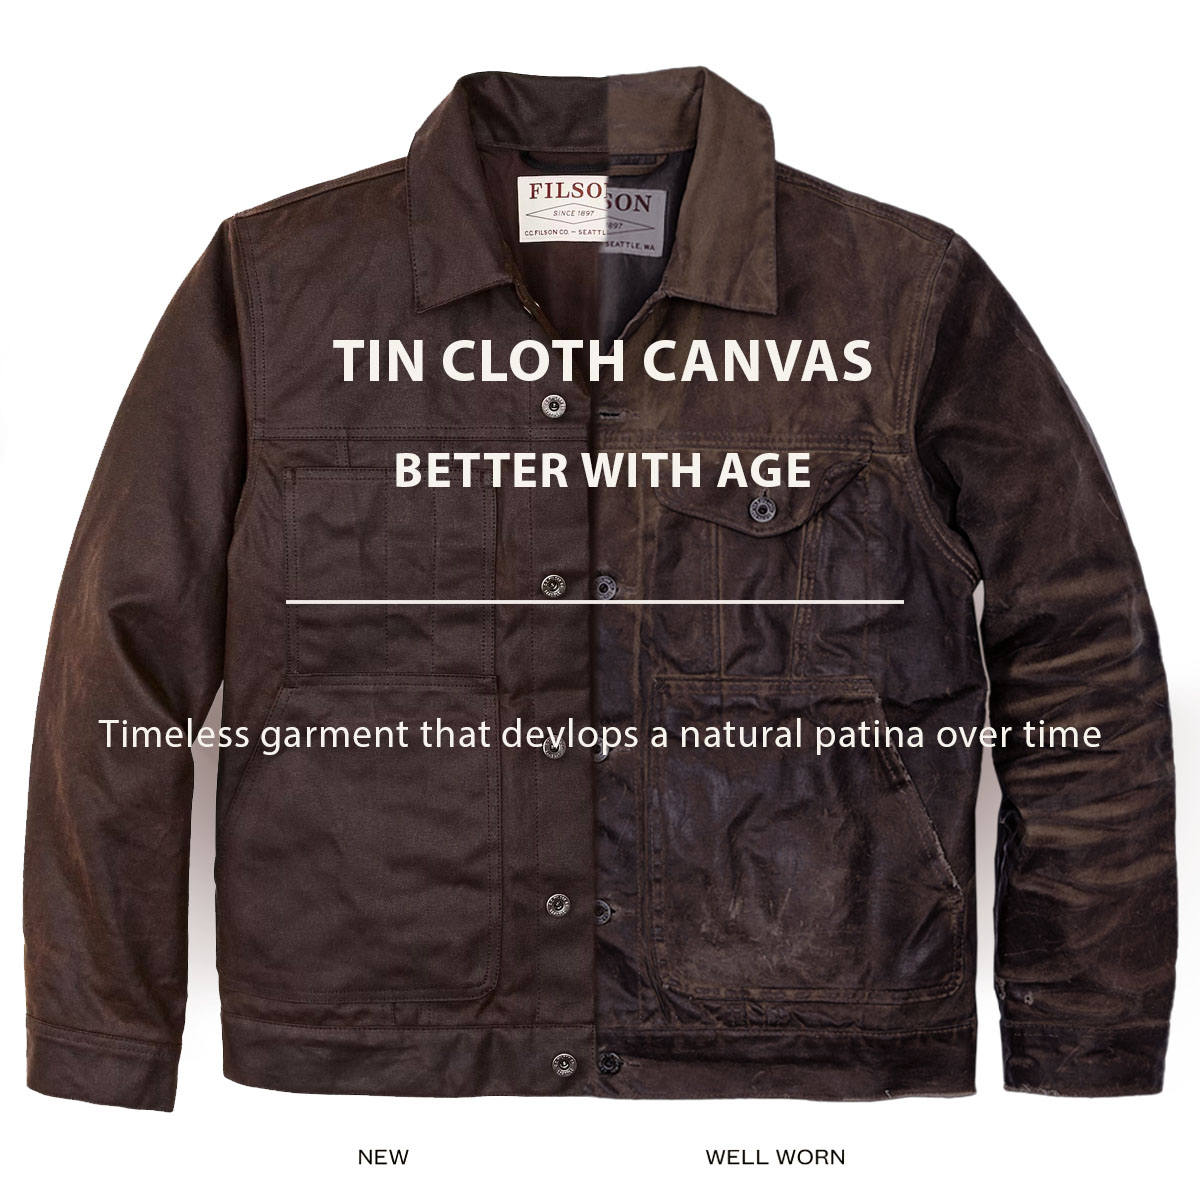 Filson Tin Cloth Short Lined Cruiser Jacket Dark Brown, better with age, ein zeitloses Kleidungsstück, das im Laufe der Zeit eine natürliche Patina entwickelt